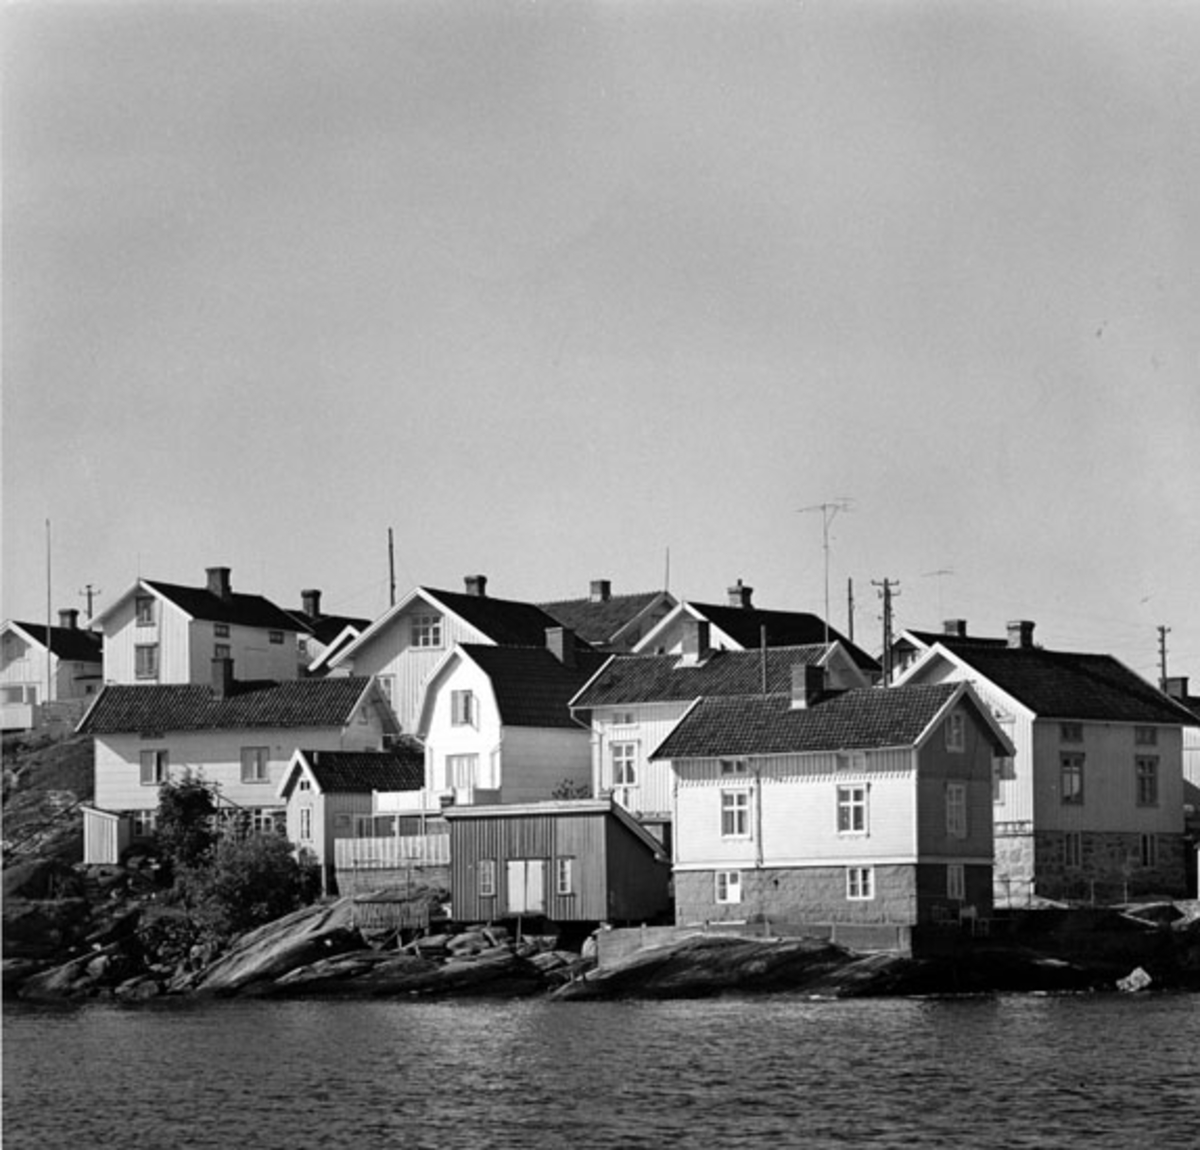 Fotograferat av: Pål-Nils Nilsson Stockholm Drottninggatan 88c
Skrivet på baksidan: 083-693-8